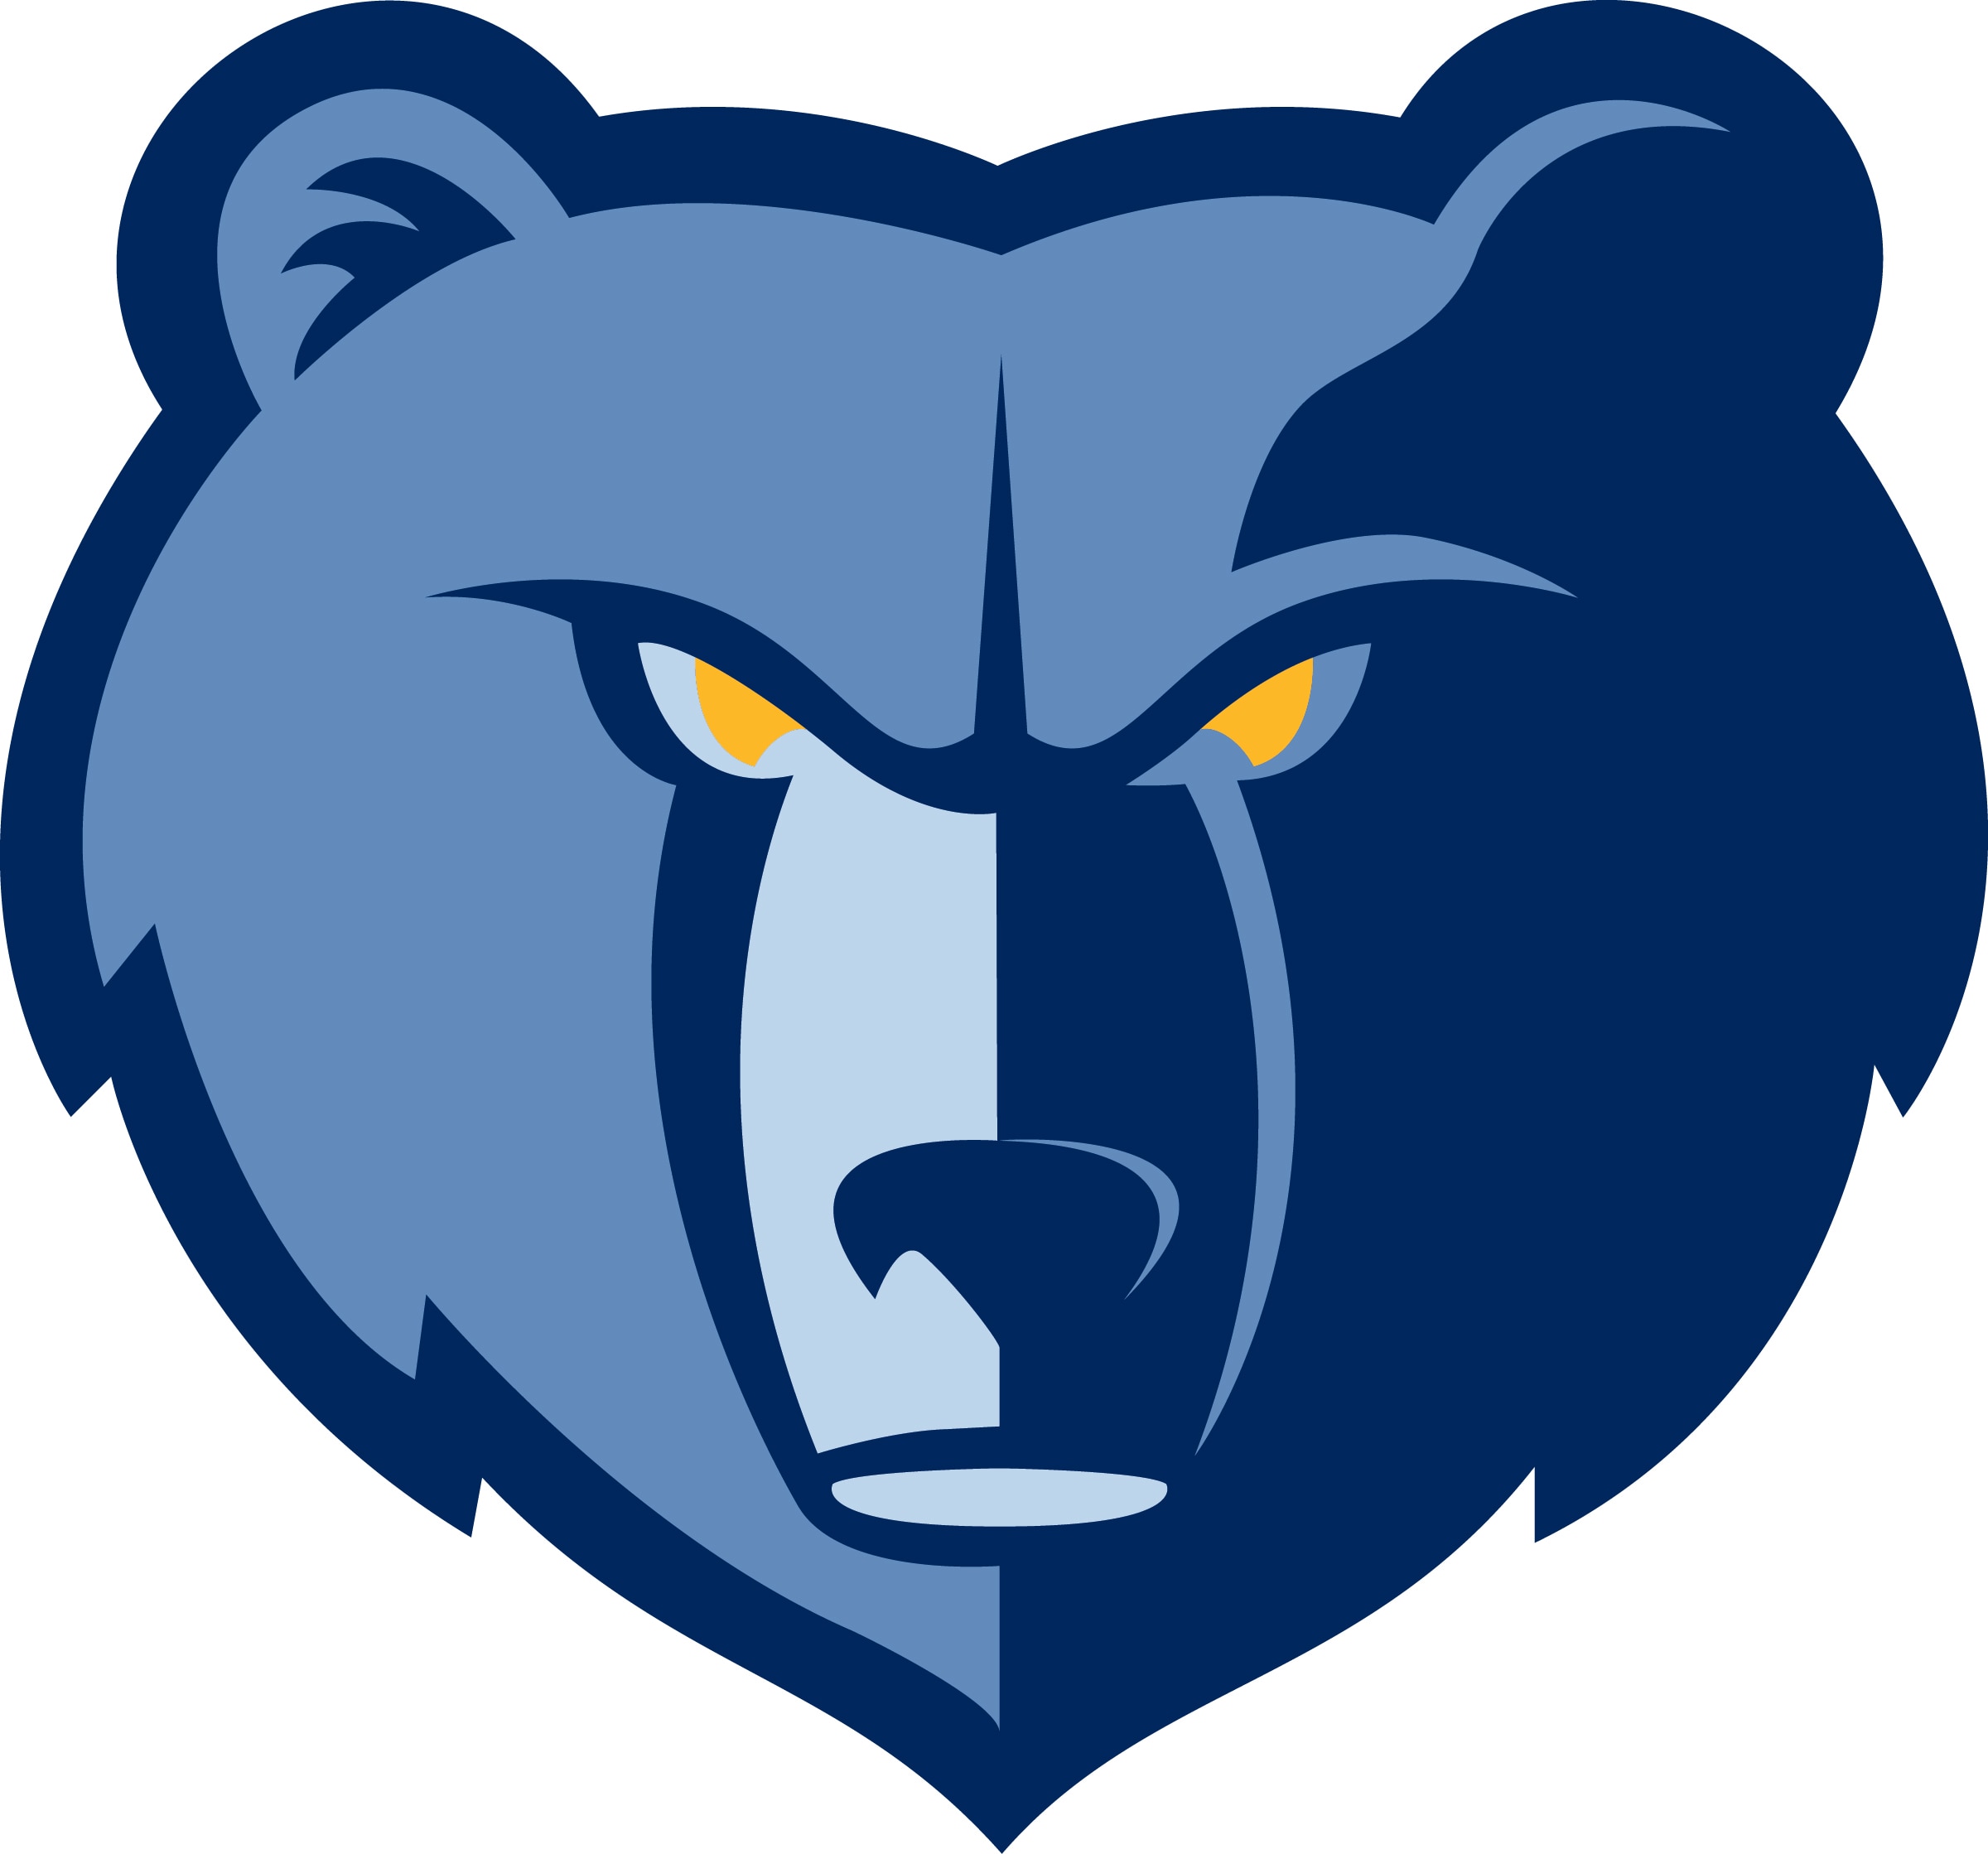 The Grizzlies Logo - a blue bear head